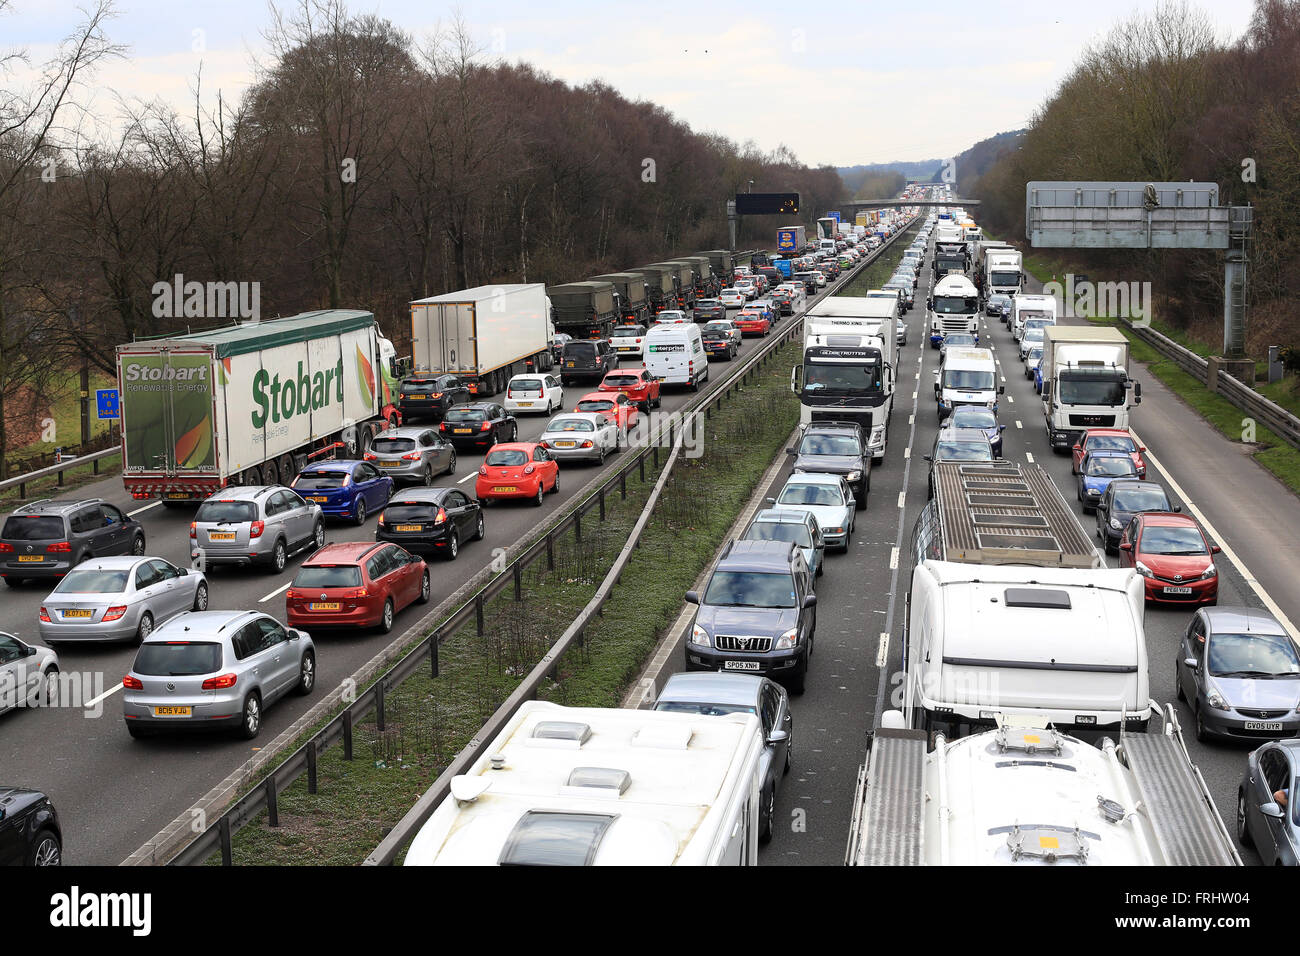 L'image montre la misère de l'autoroute M6 dans Staffordshire embouteillages à travers 6 voies d'autoroute, y compris les manœuvres de l'Armée de terre Banque D'Images